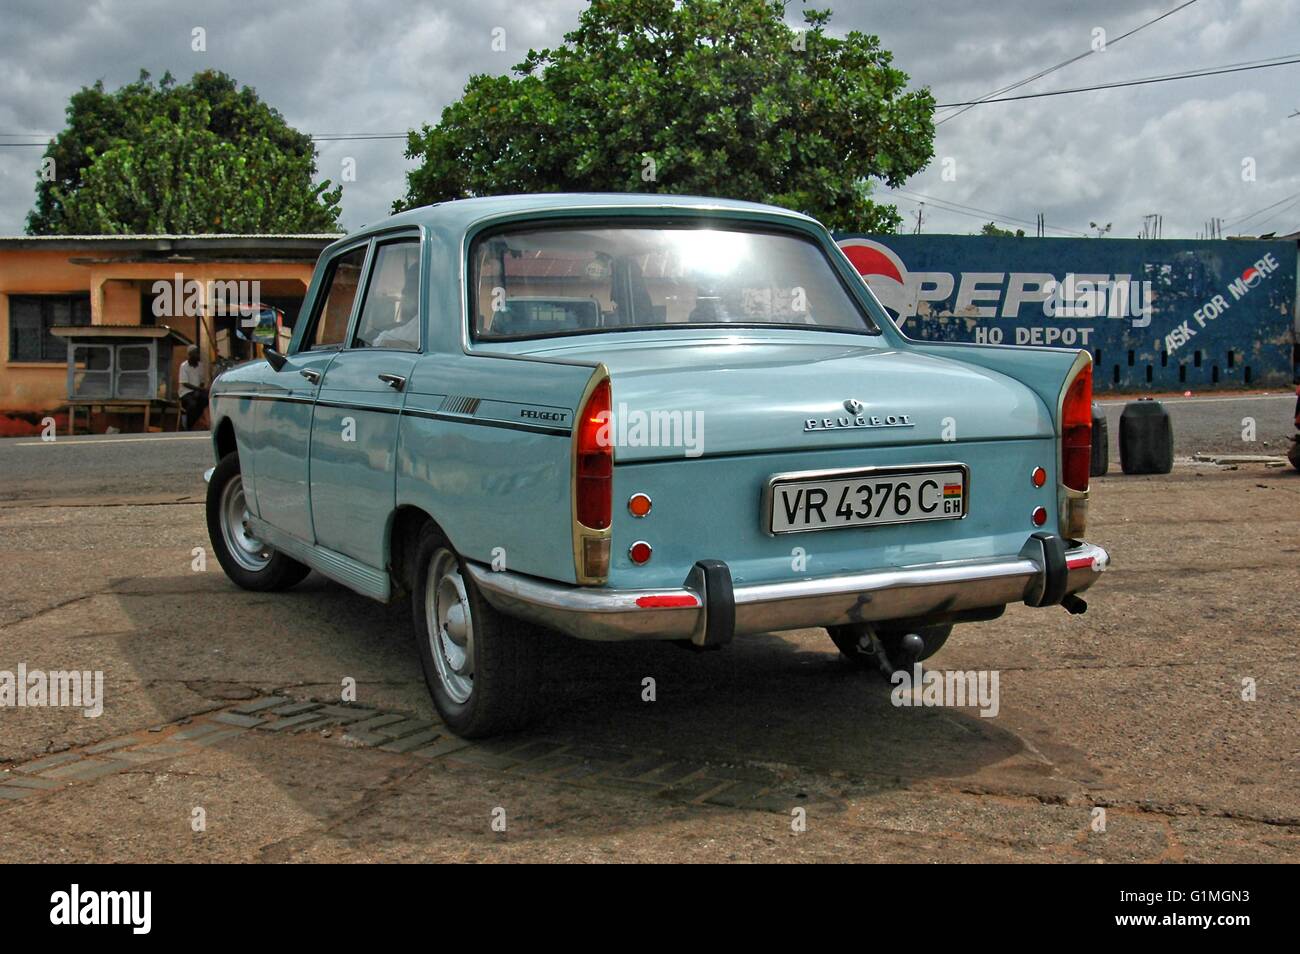 Vecchia auto degli anni sessanta costruire, ma grande mantenuta francese Peugeot auto, nella sua auto originali a colori, visto in Ghana, Africa Occidentale, vista posteriore Foto Stock